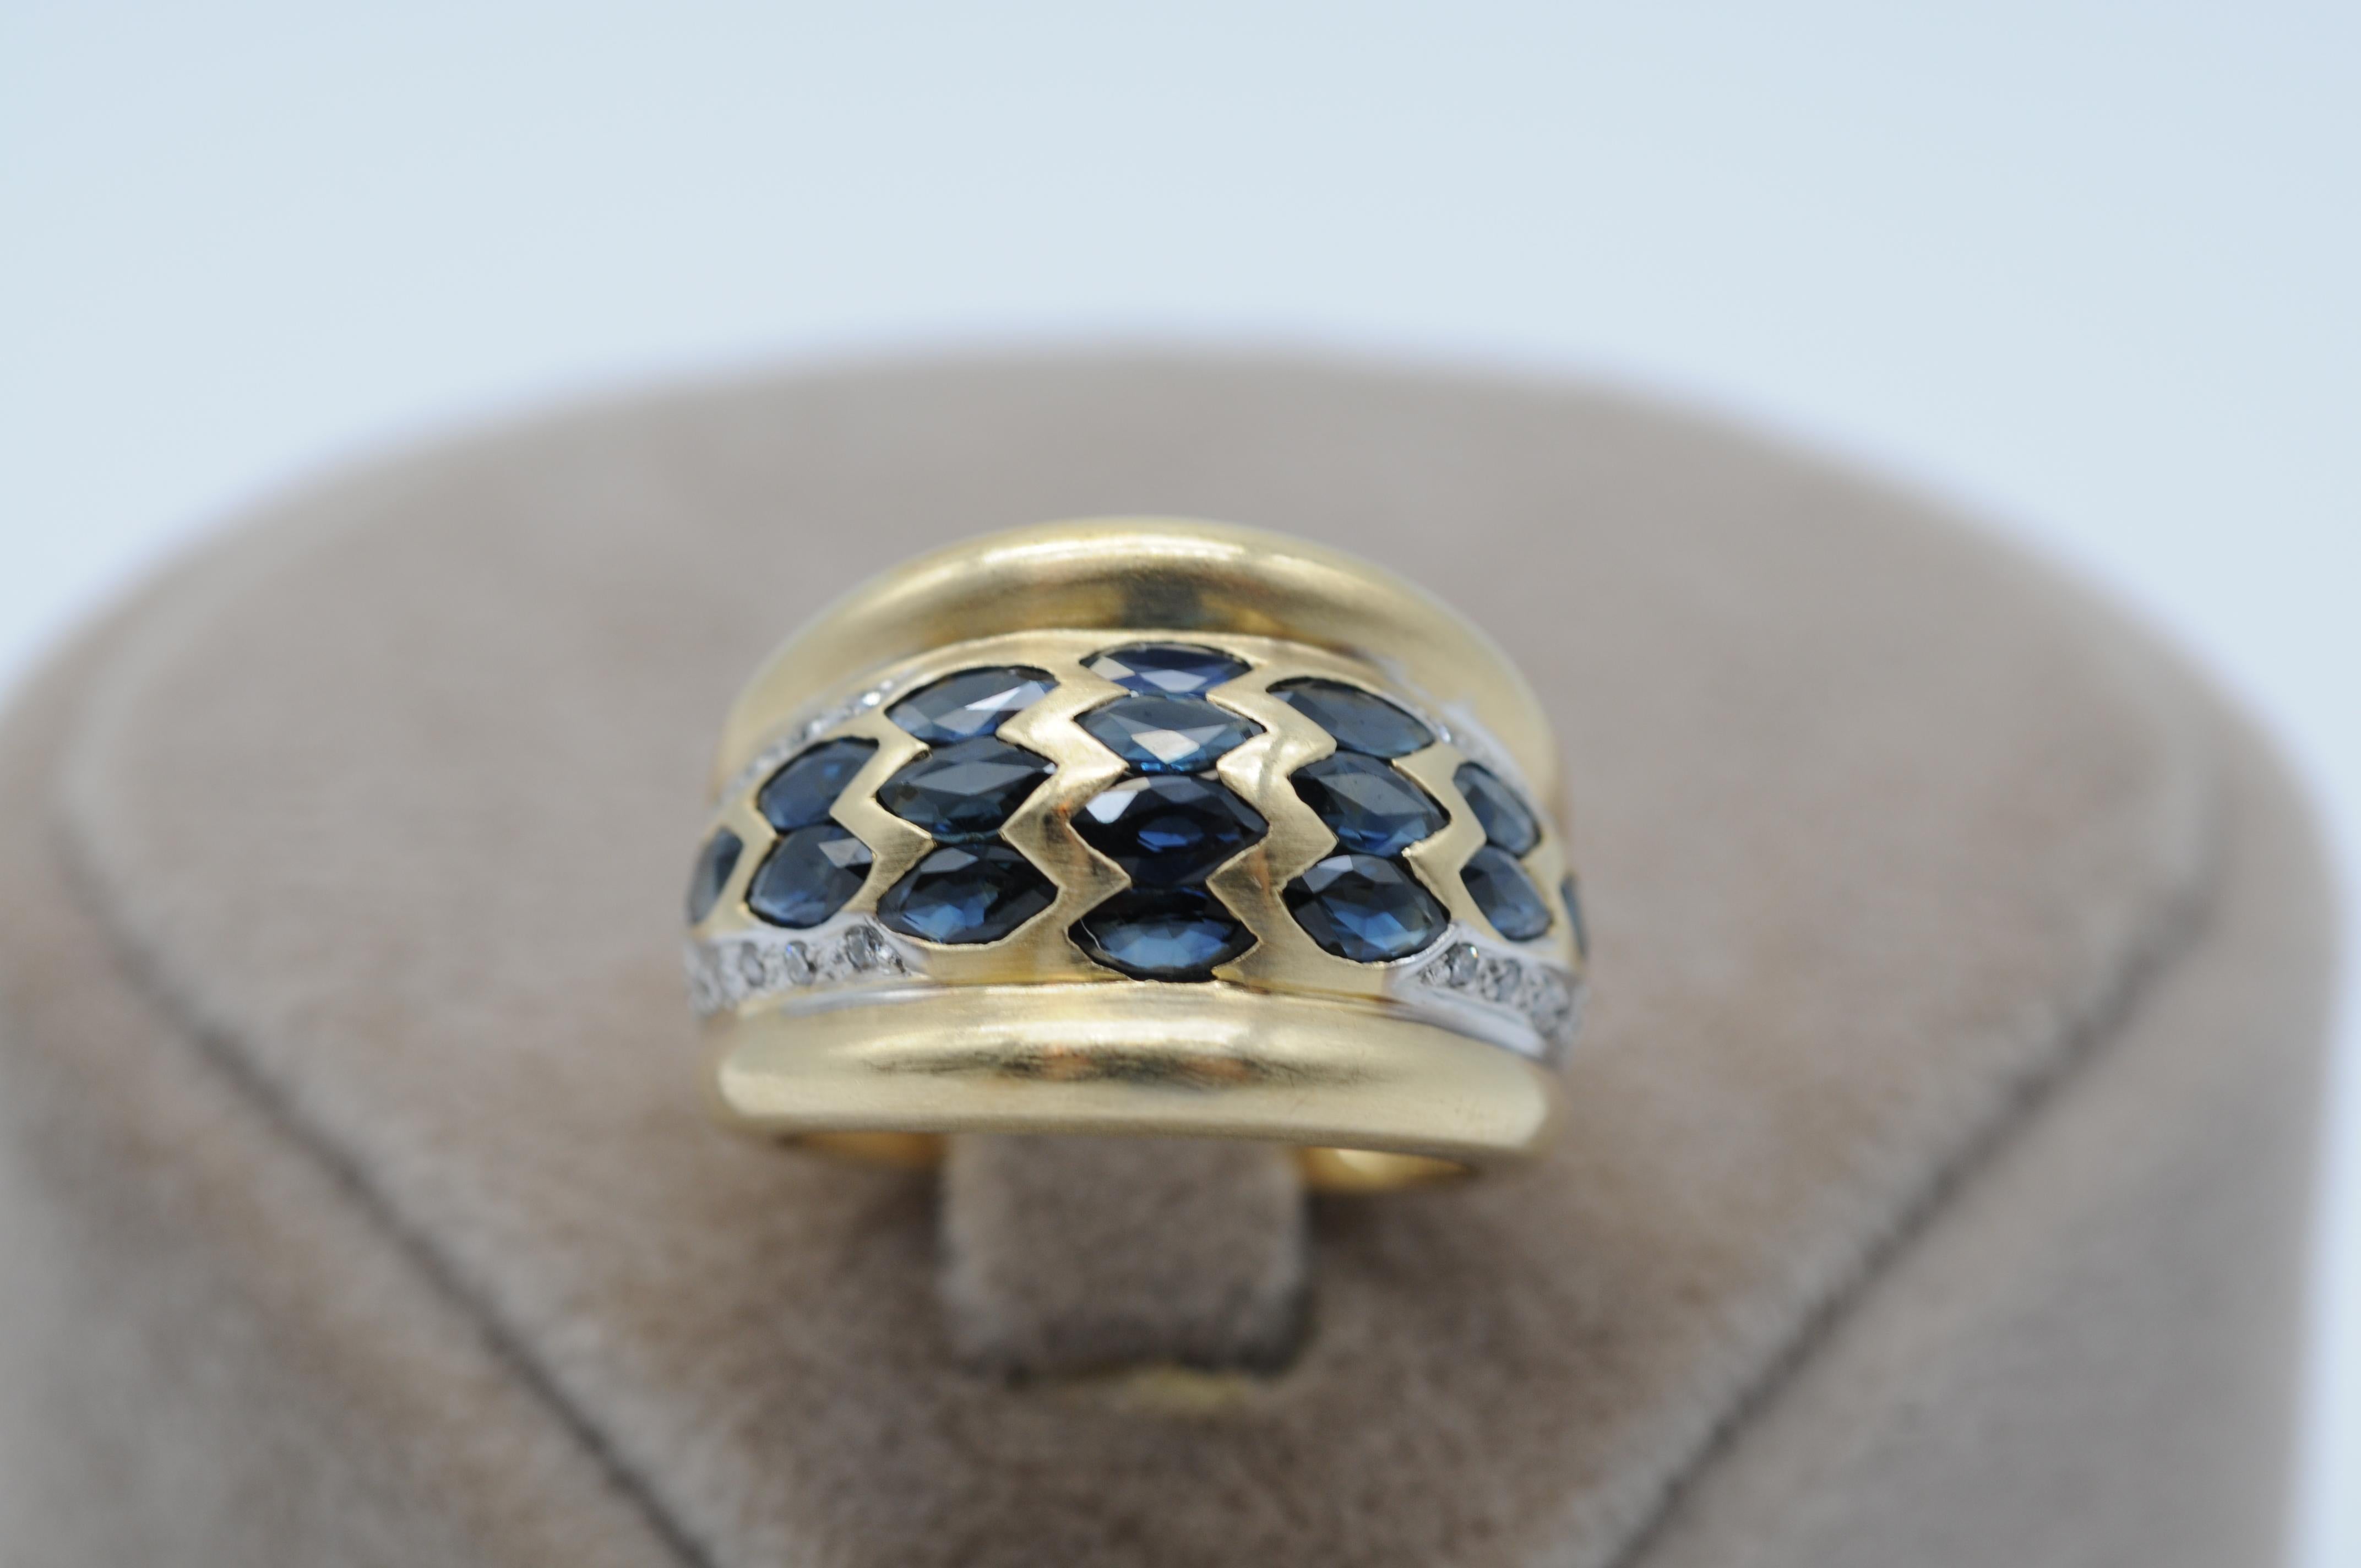 Treten Sie ein in ein Reich zeitloser Schönheit und exquisiter Handwerkskunst mit diesem atemberaubend edlen Ring aus 18k Gelbgold. Dieser mit äußerster Präzision gefertigte und mit einer Symphonie aus Saphiren und Diamanten geschmückte Ring ist ein